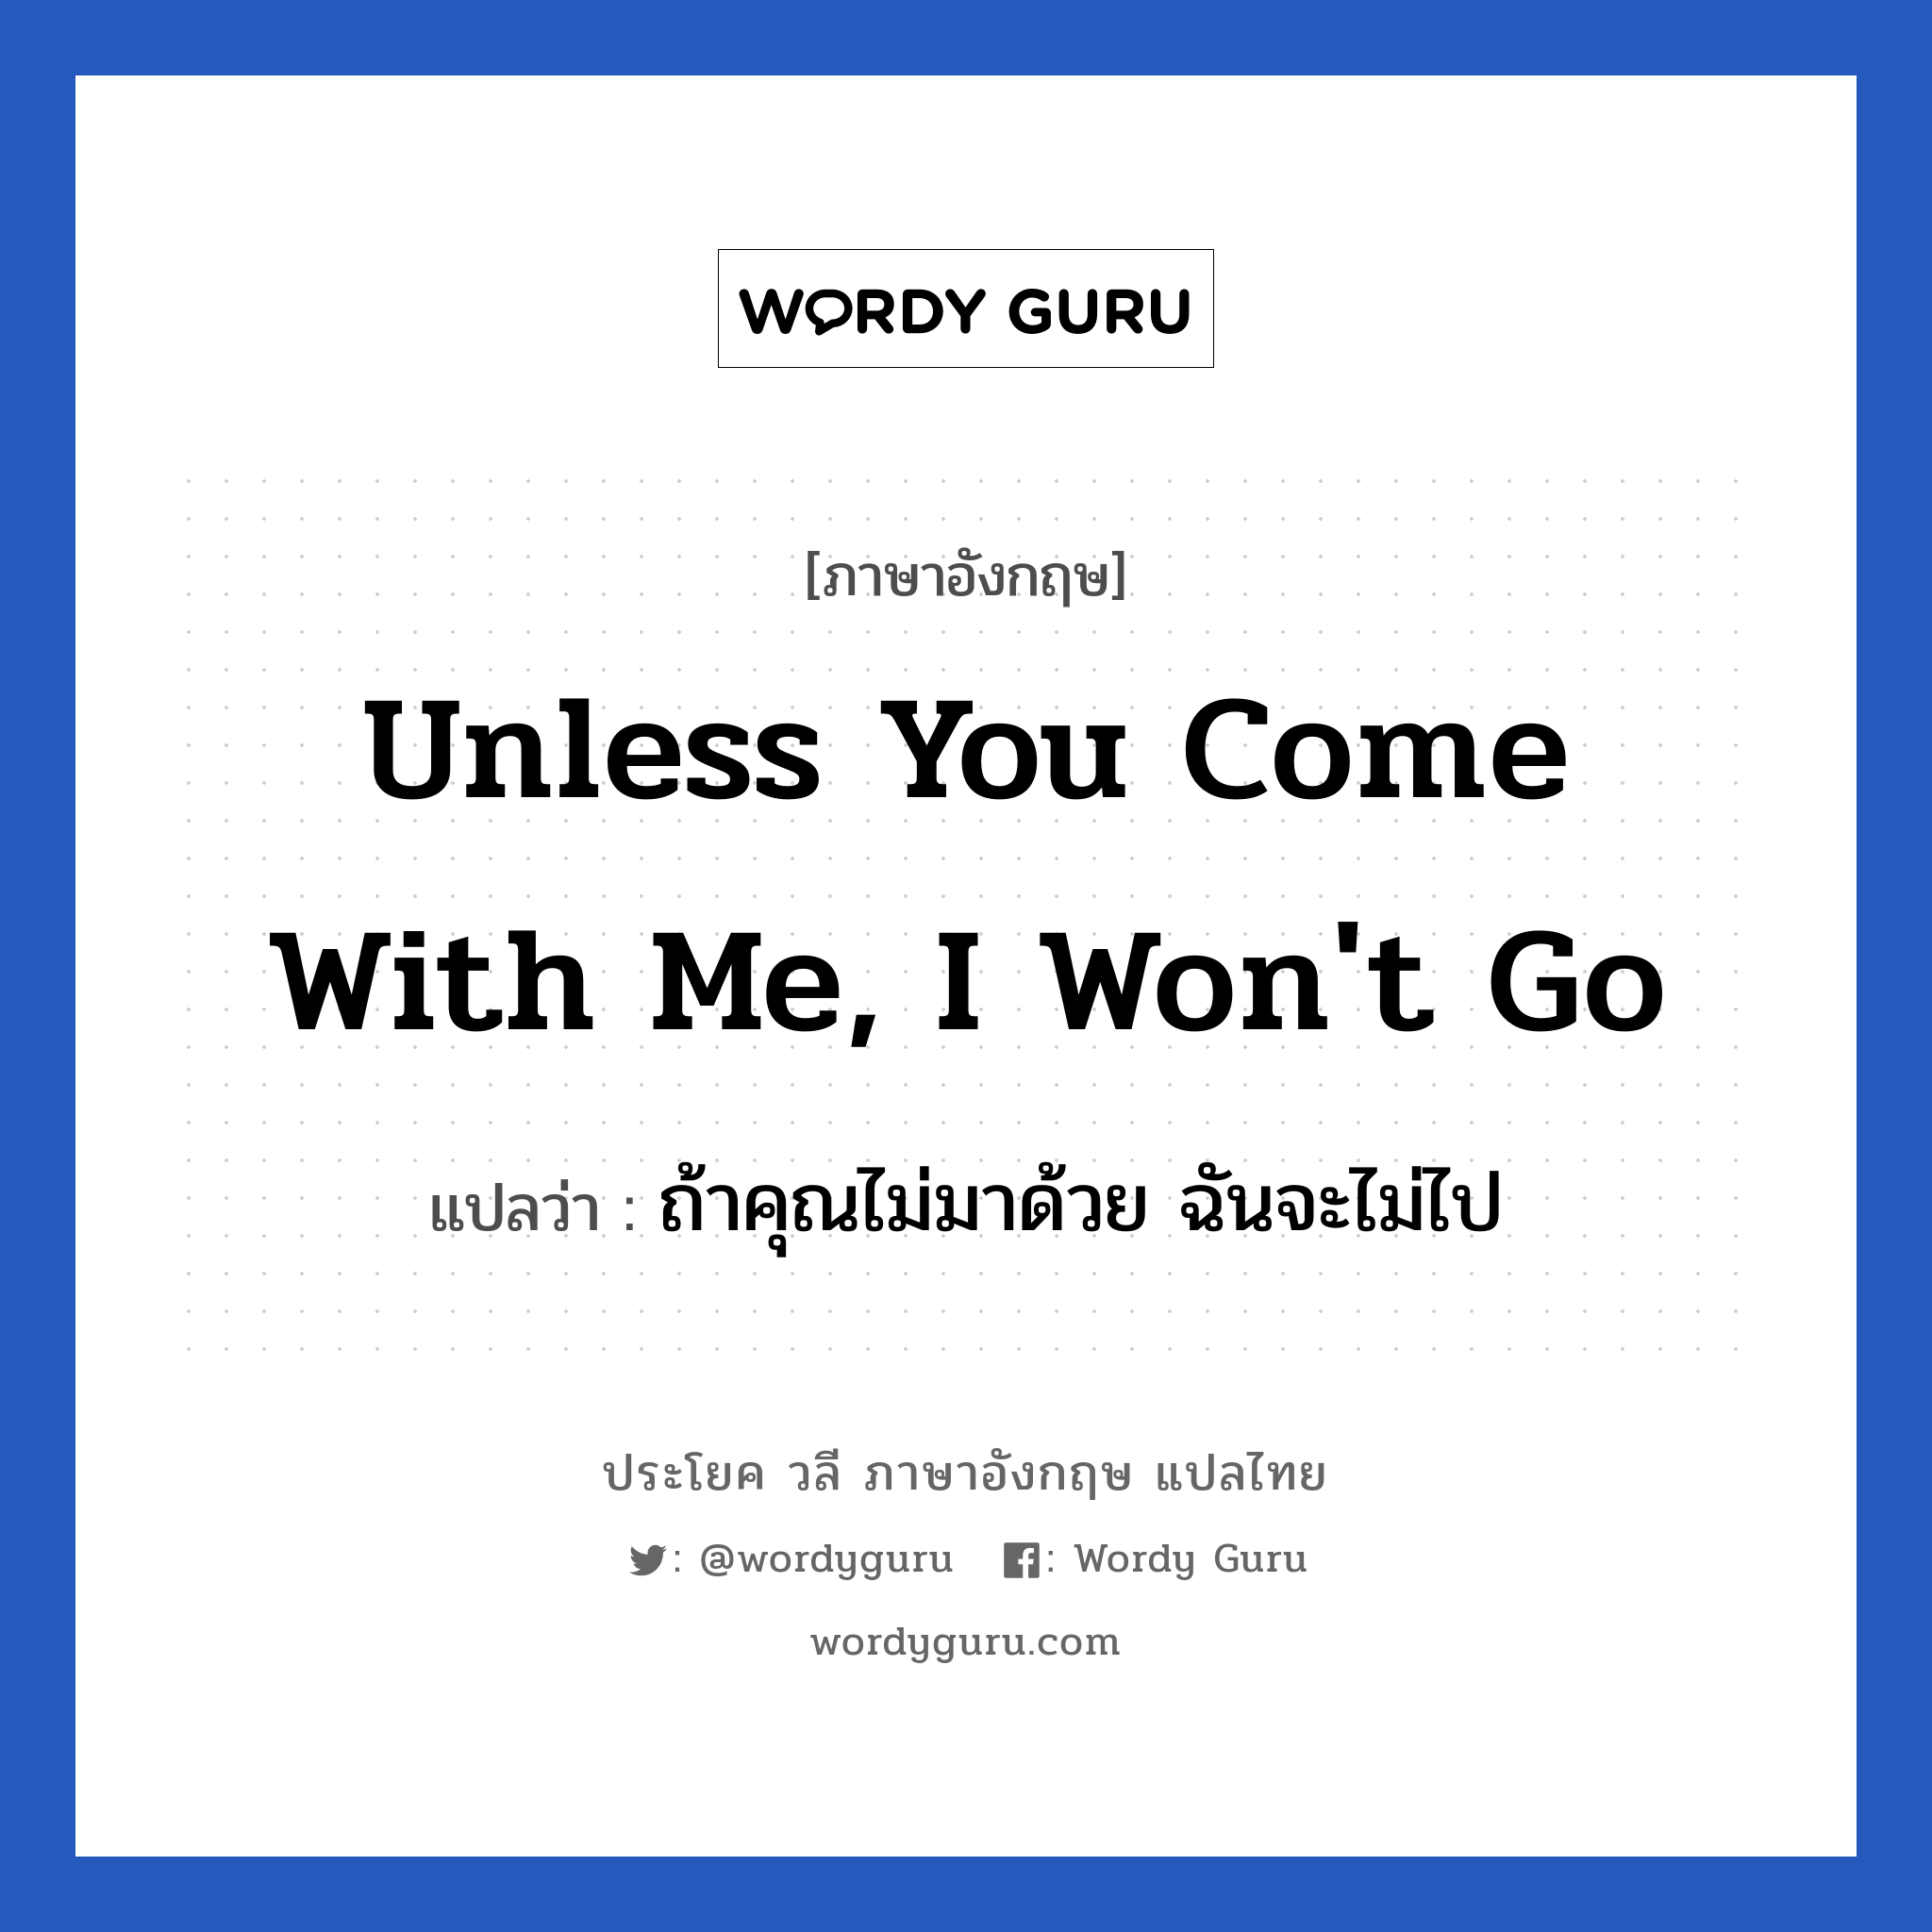 Unless you come with me, I won't go แปลว่า?, วลีภาษาอังกฤษ Unless you come with me, I won't go แปลว่า ถ้าคุณไม่มาด้วย ฉันจะไม่ไป